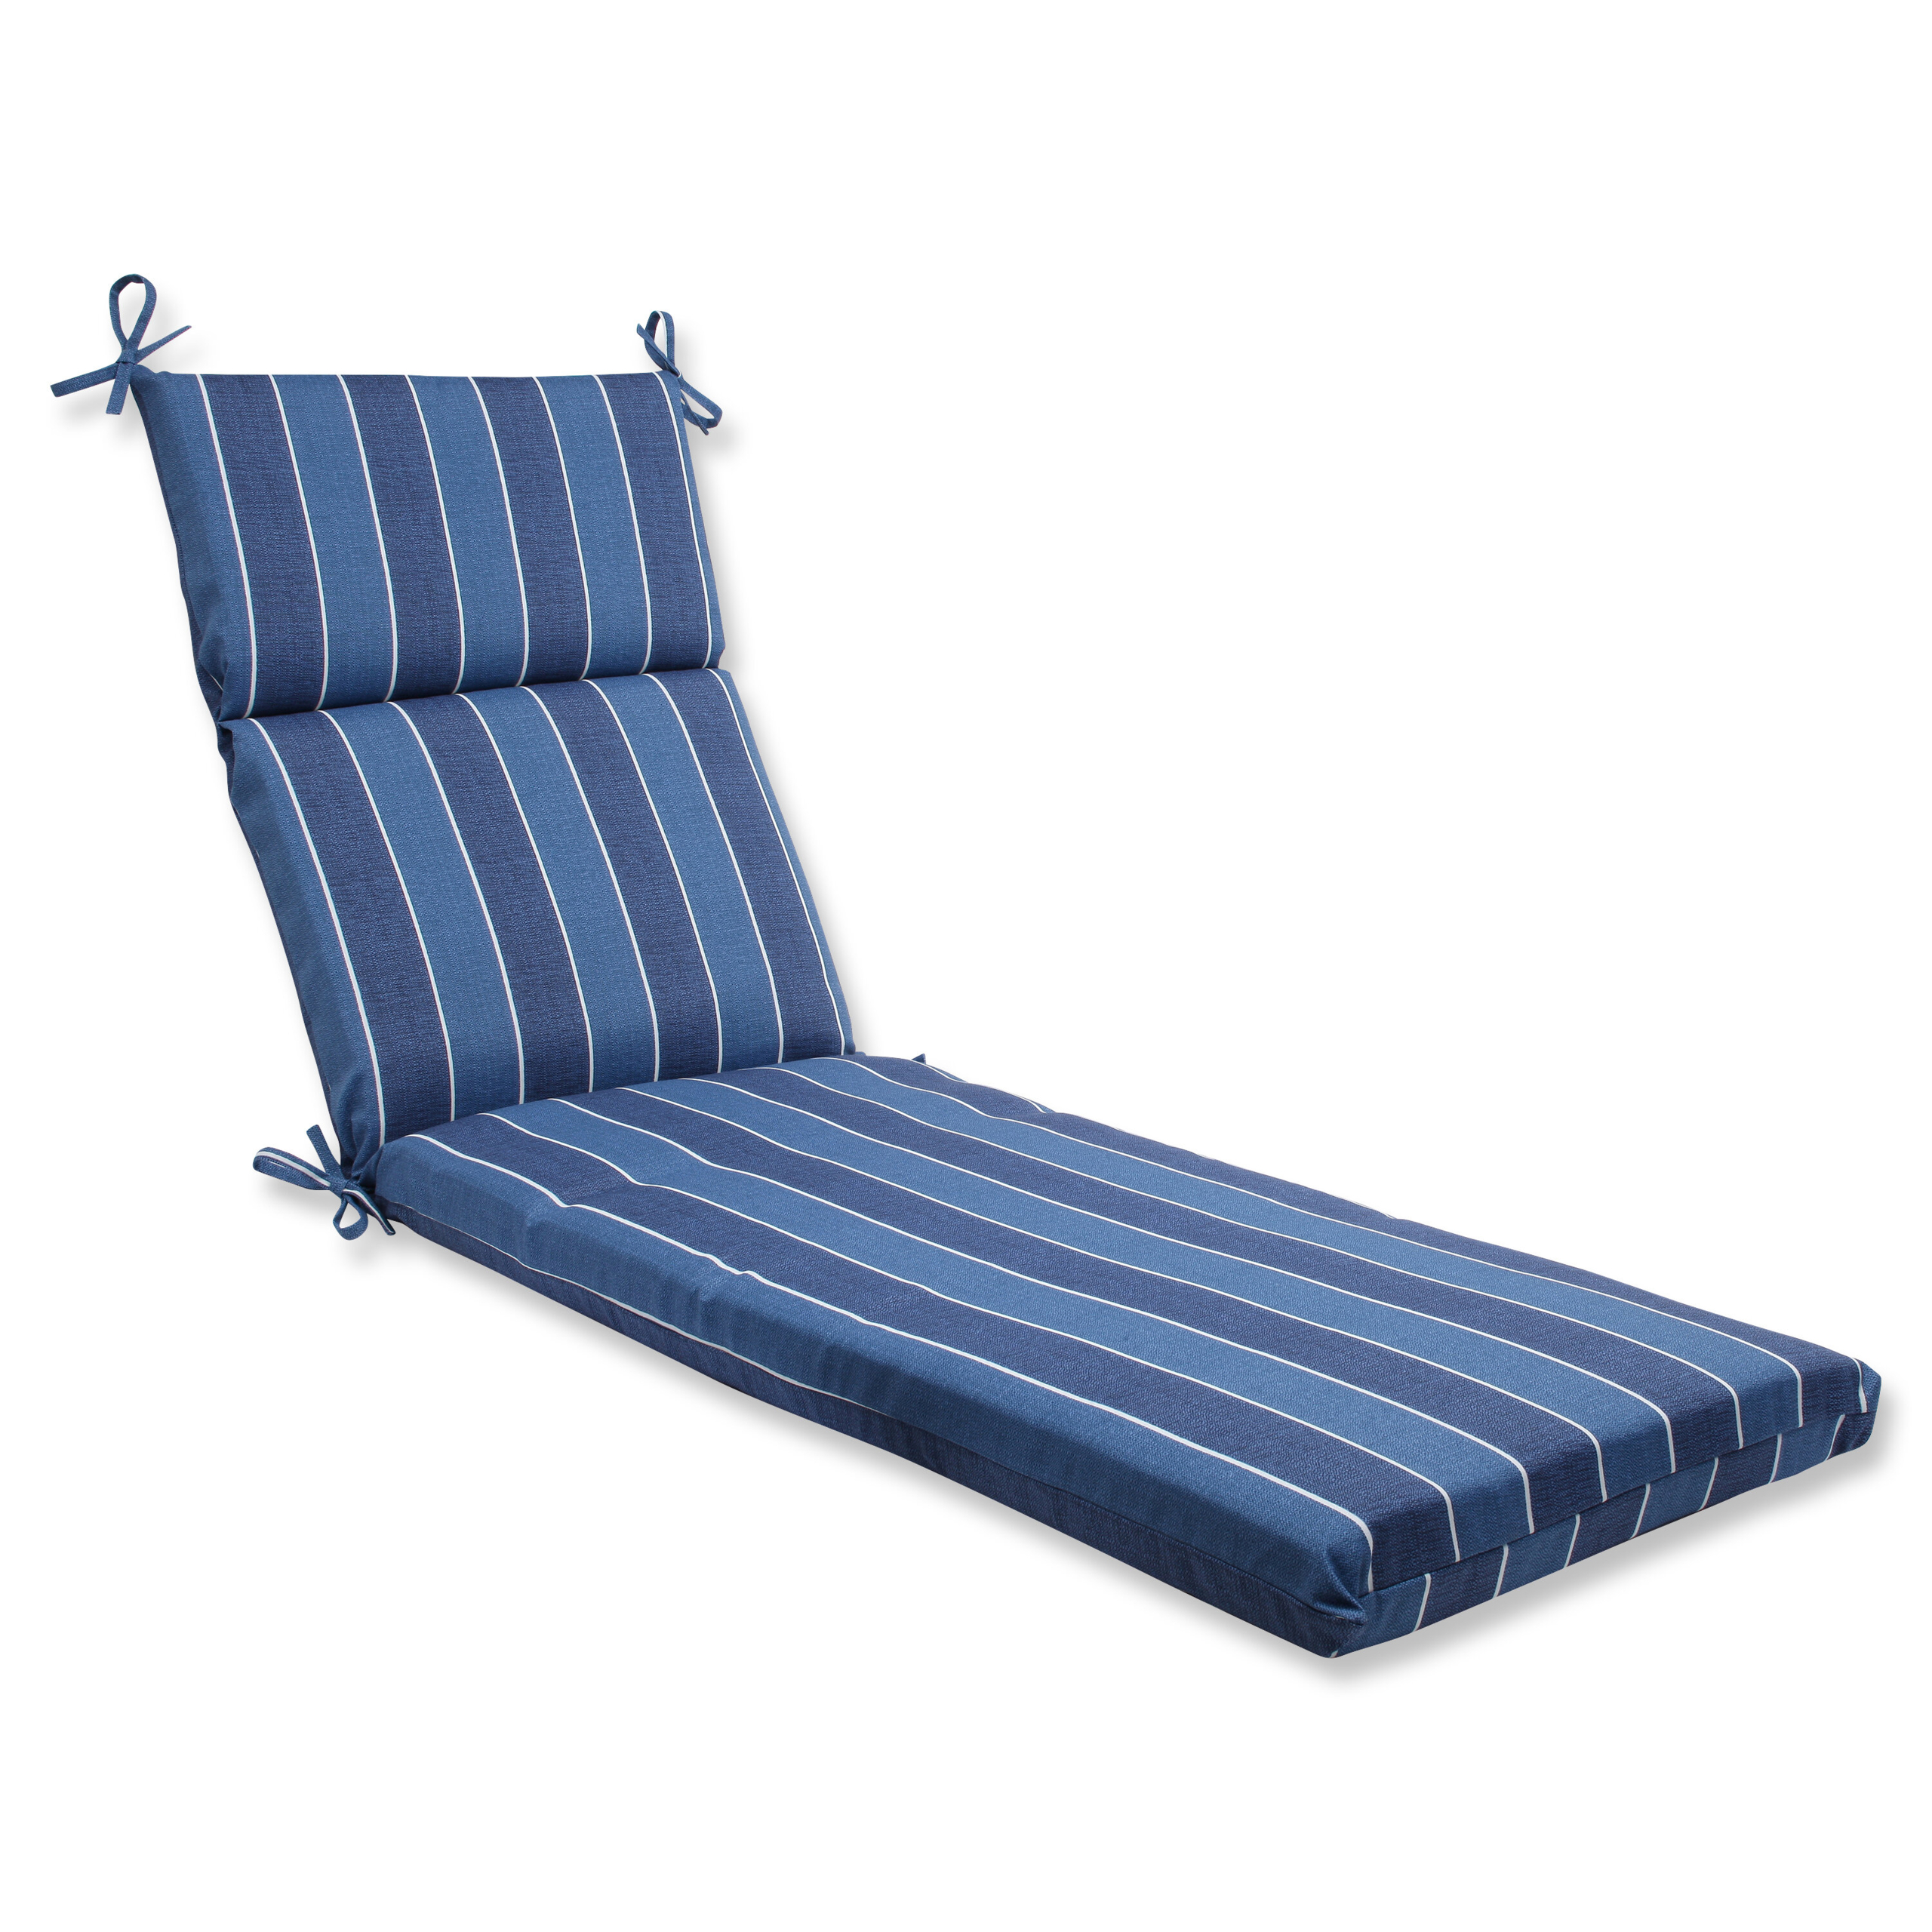 Wickenburg Chaise Lounge Cushion